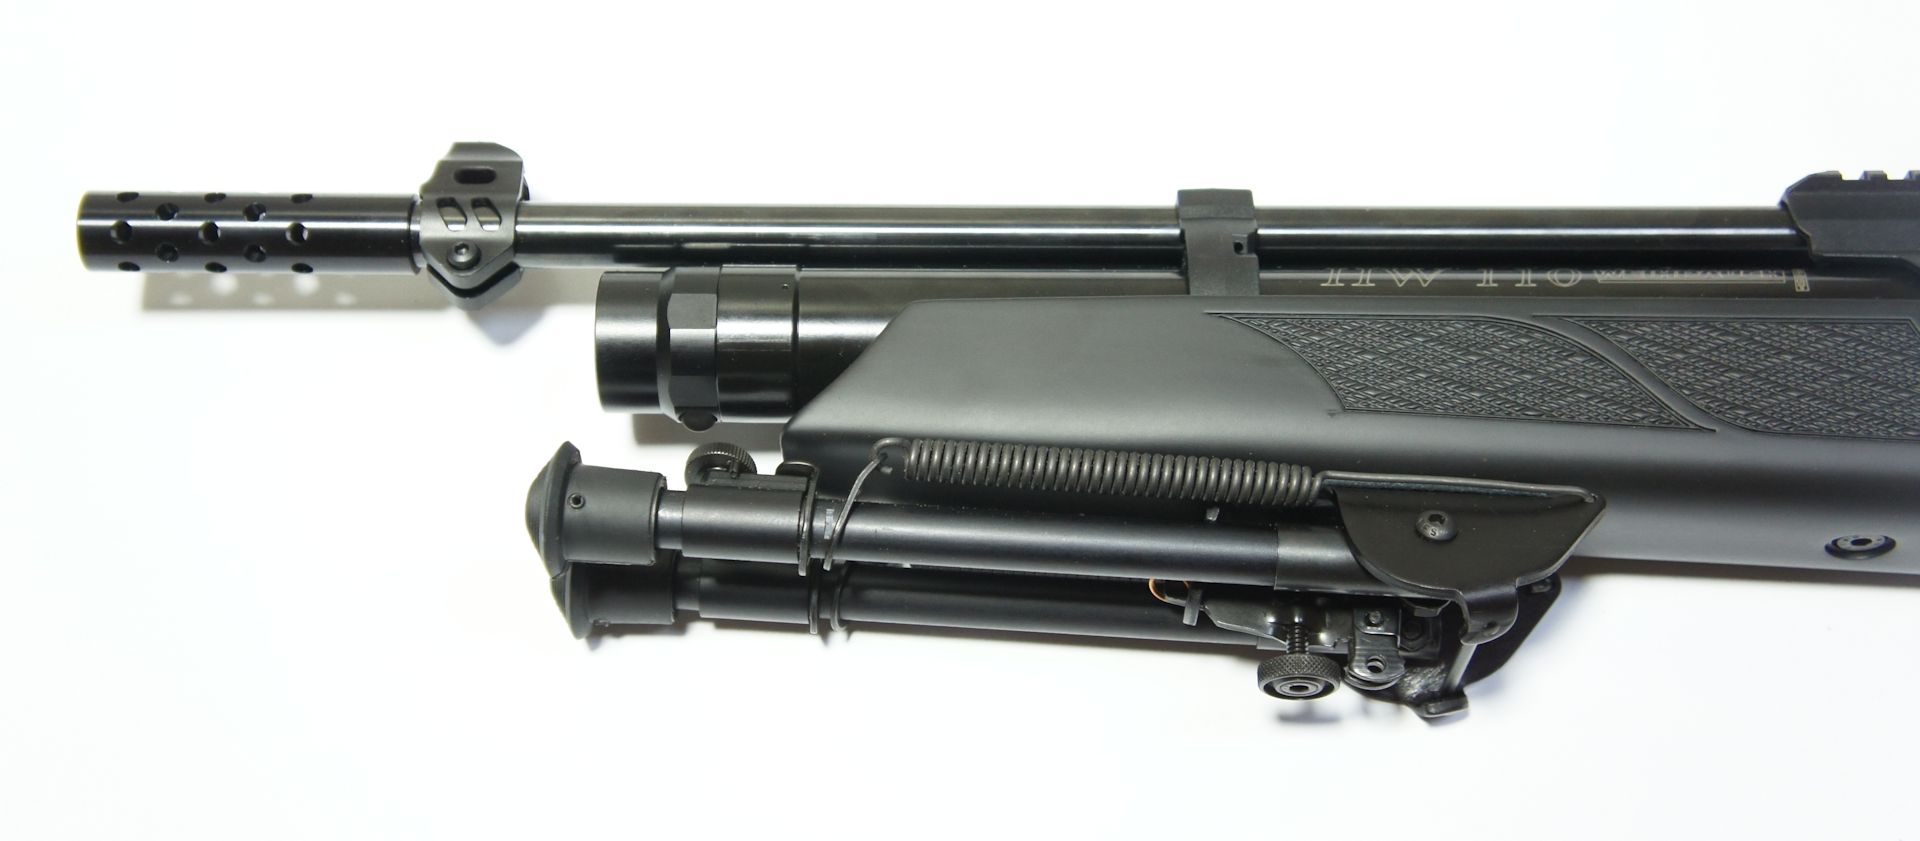 Dieses Montagebeispiel, Luftgewehr Weihrauch HW 110 carbine ist überholt, weil ca. seit 2021 eine kurze Befestigungsschiene zum Lieferumfang gehört und man ein <a href=1165808.htm> anders Zweibein</a> direkt befestigen kann.